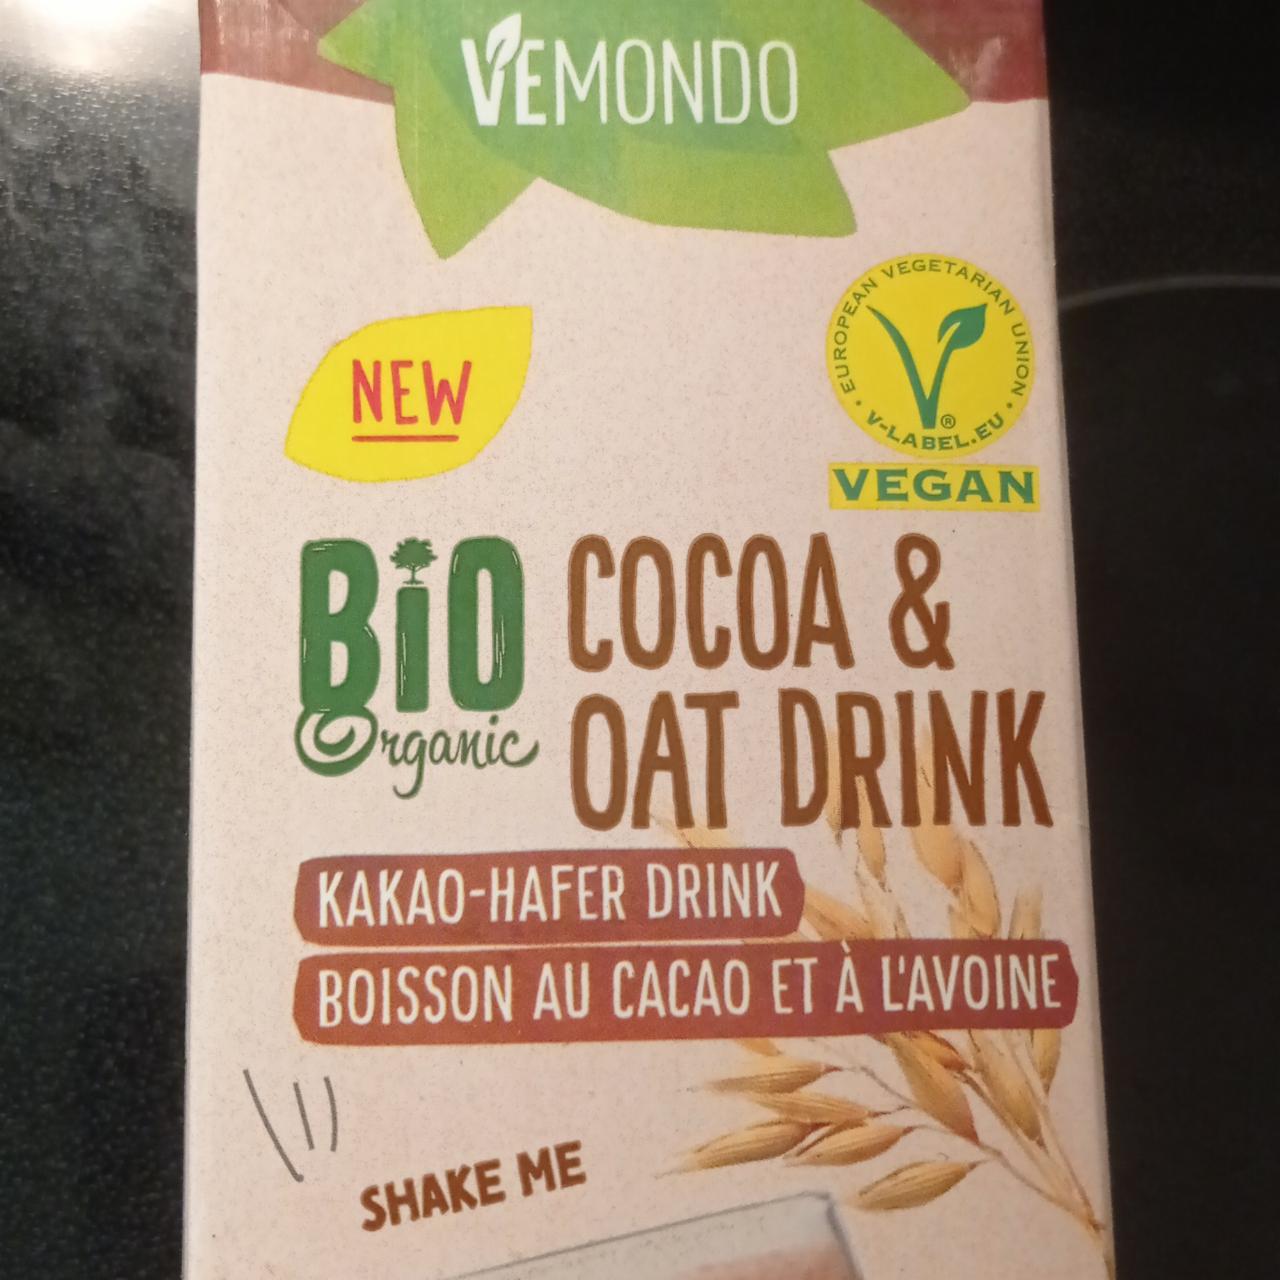 Bio Kakao Hafer Vemondo hodnoty - kJ kalorie, a nutriční